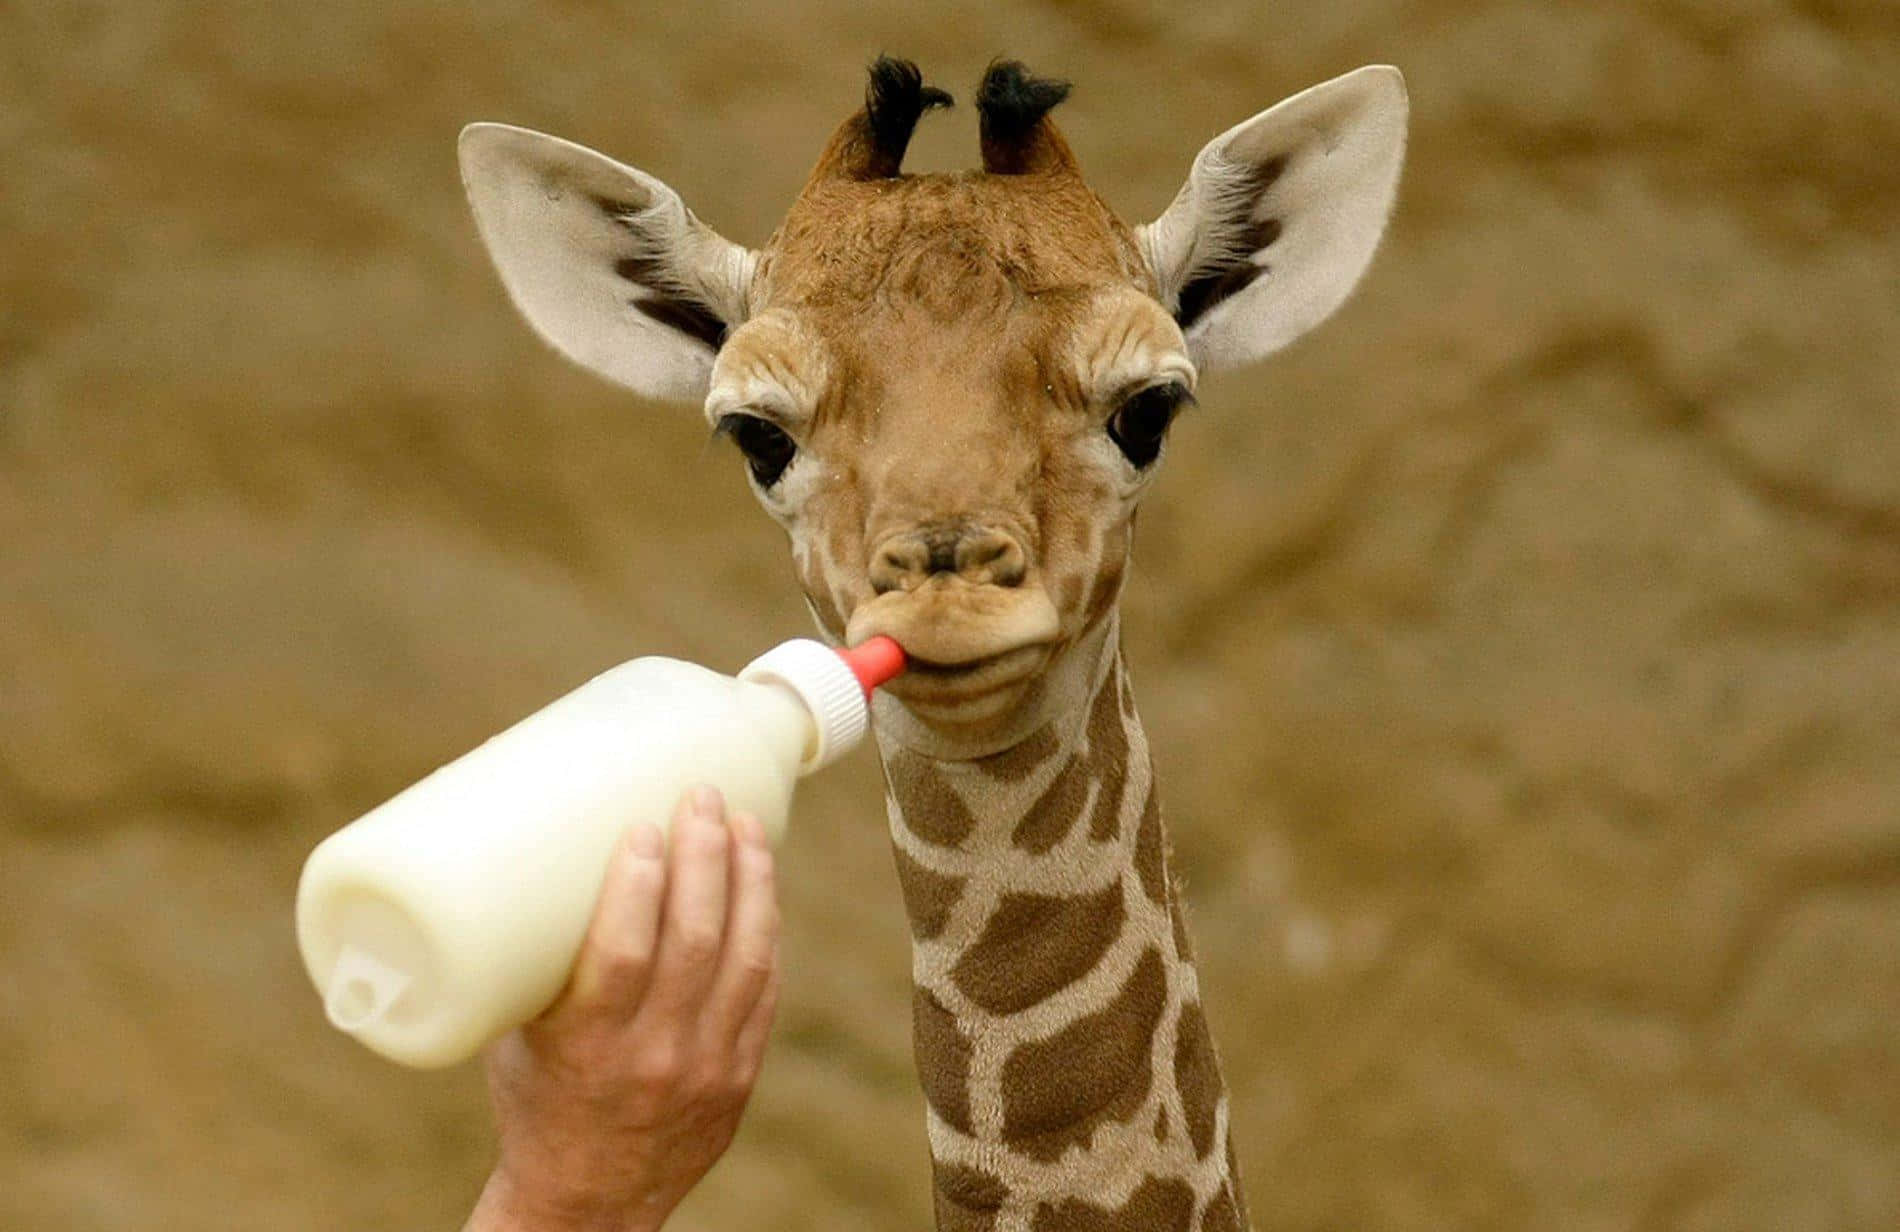 Välkommentill Världen, Lilla Giraffen!